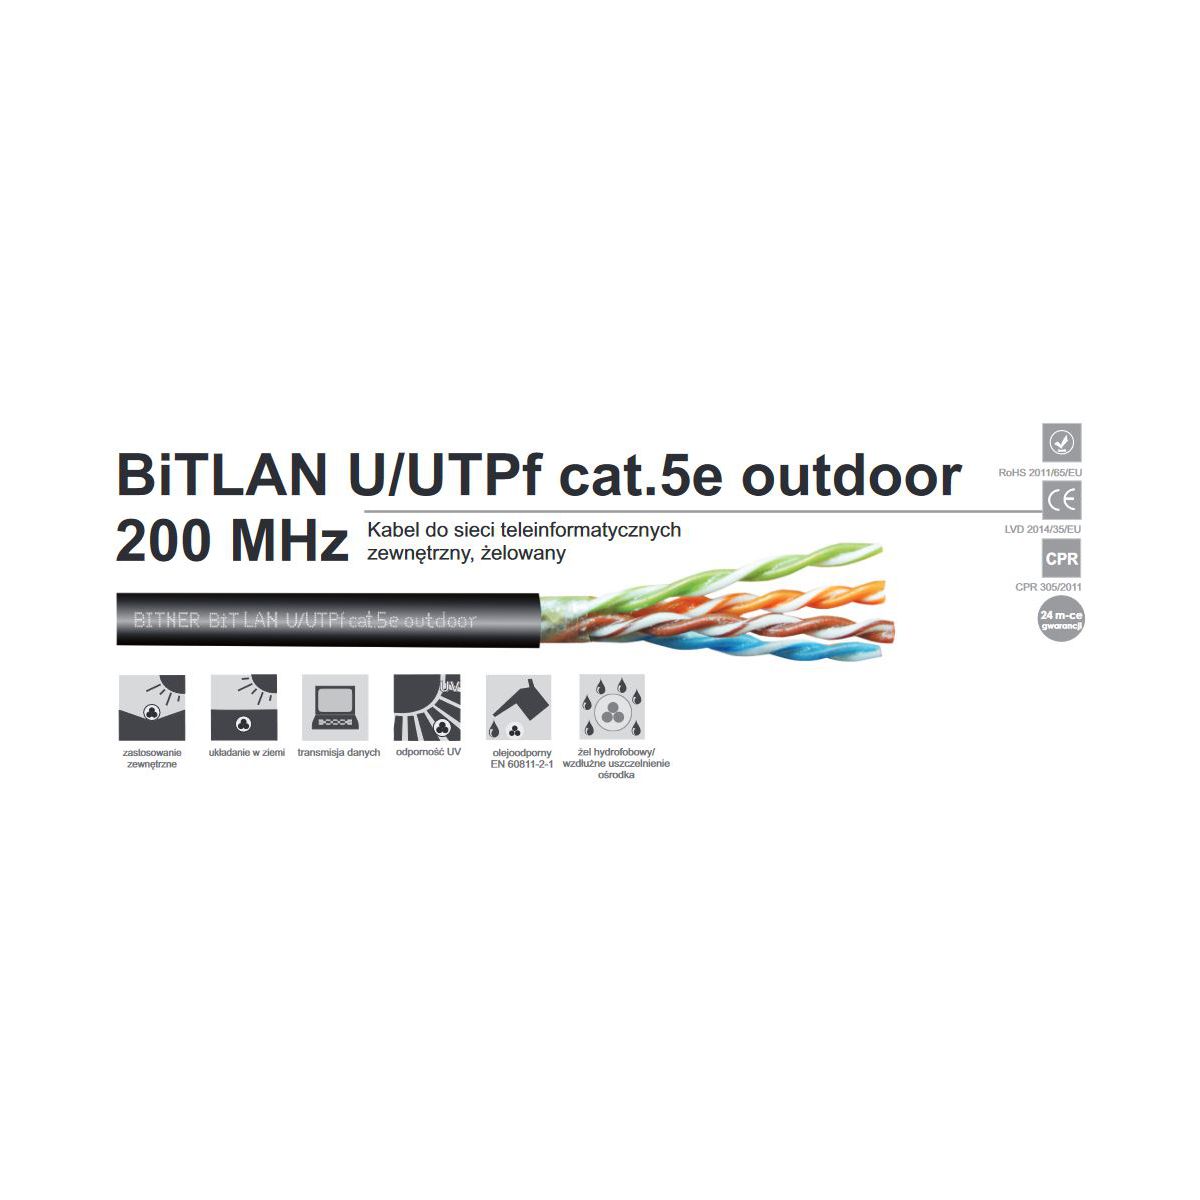 Kabel zewnętrzny żelowany BiTLAN U/UTPf cat.5e outdoor 200MHz karton 305m